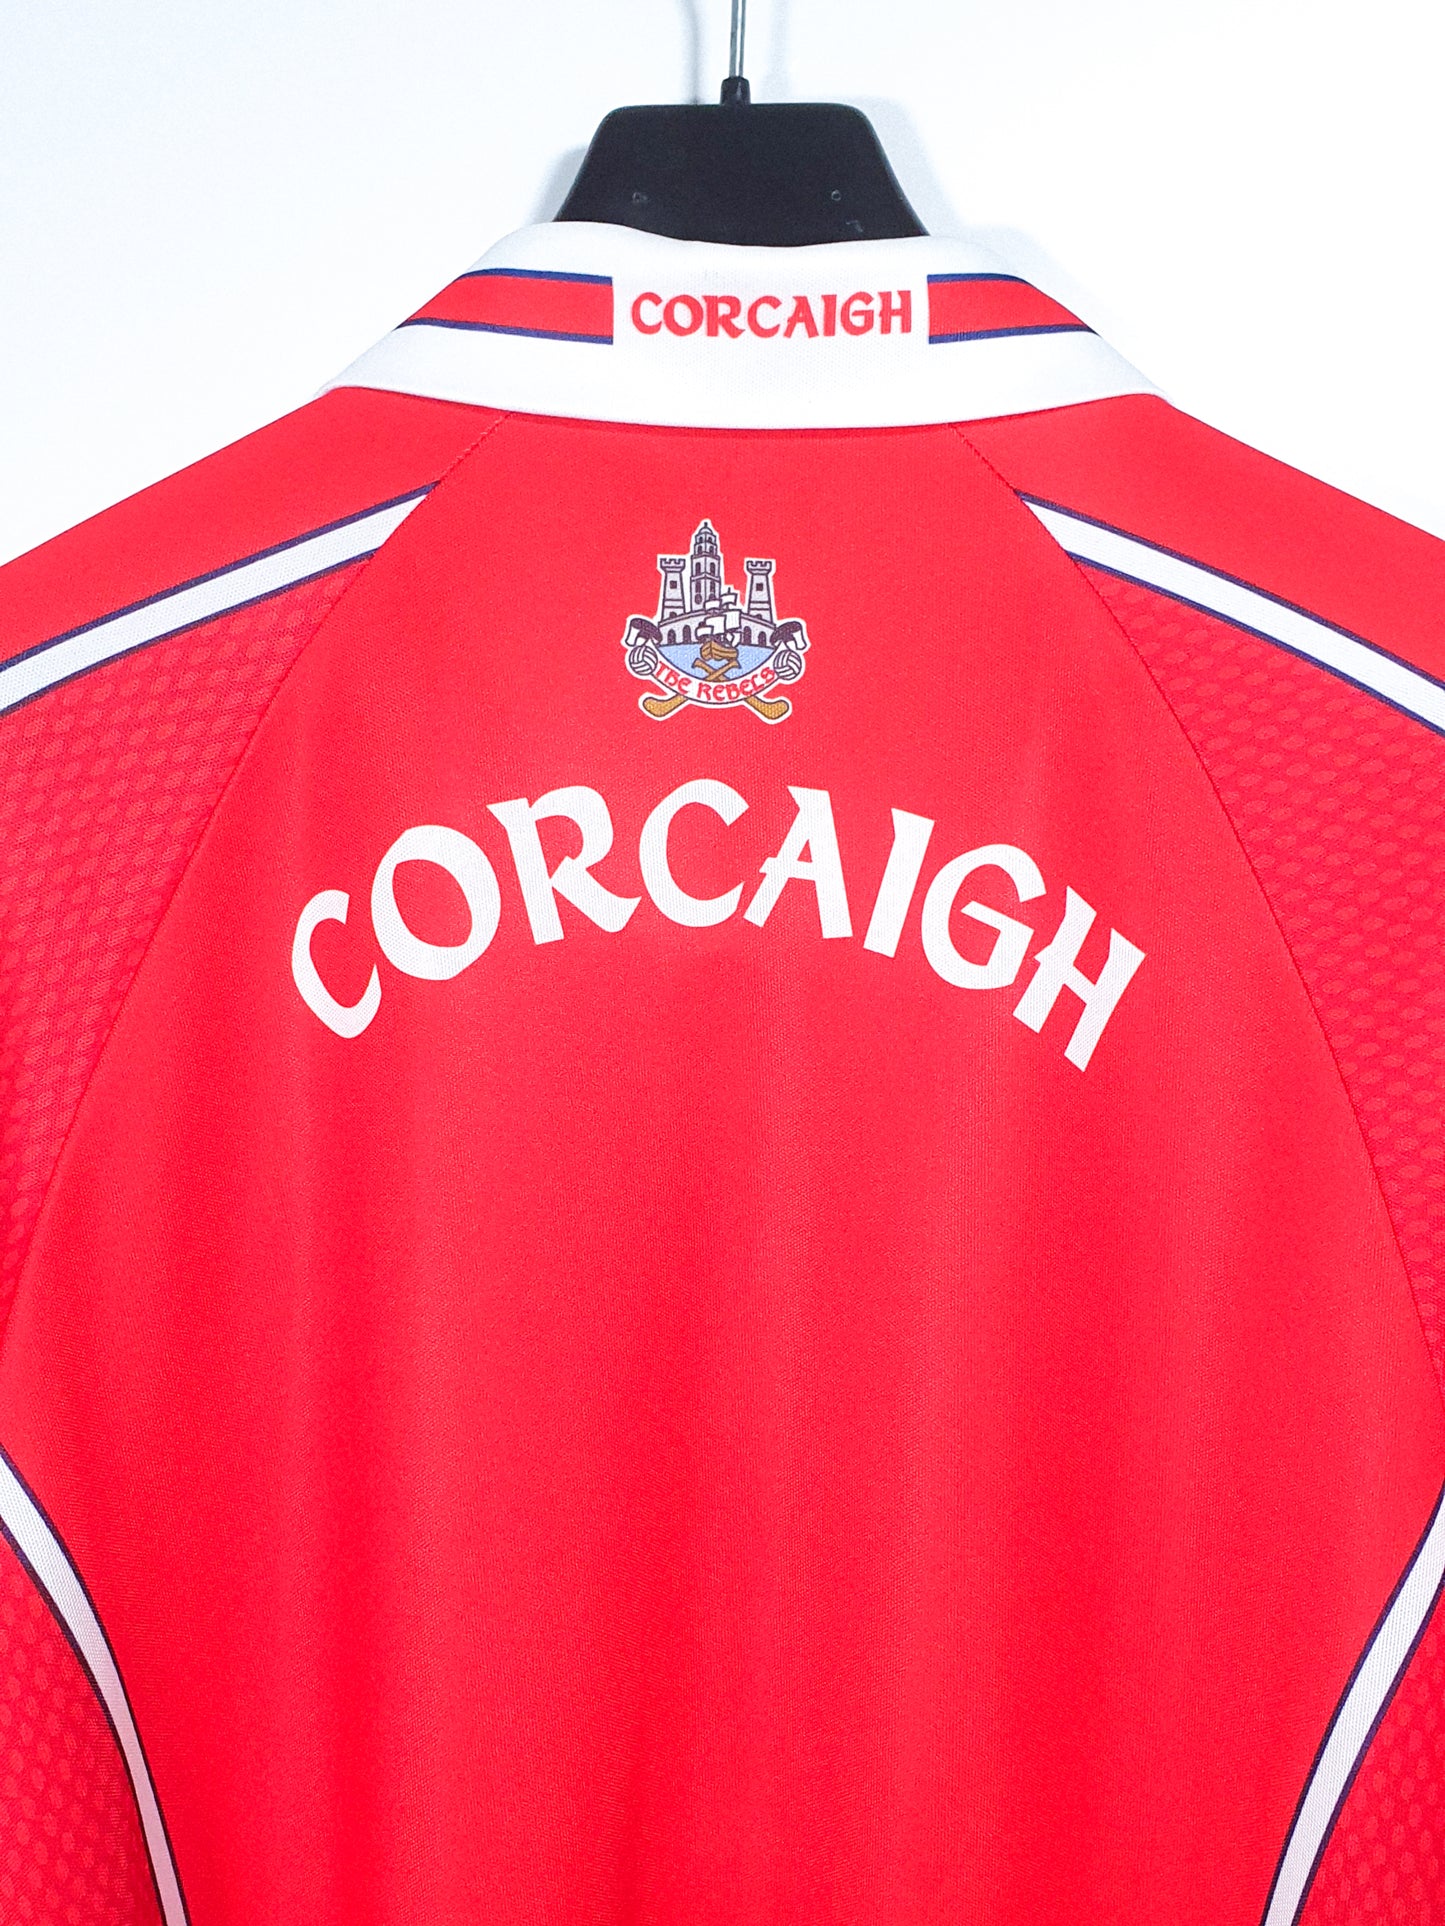 Cork 2004 (L)